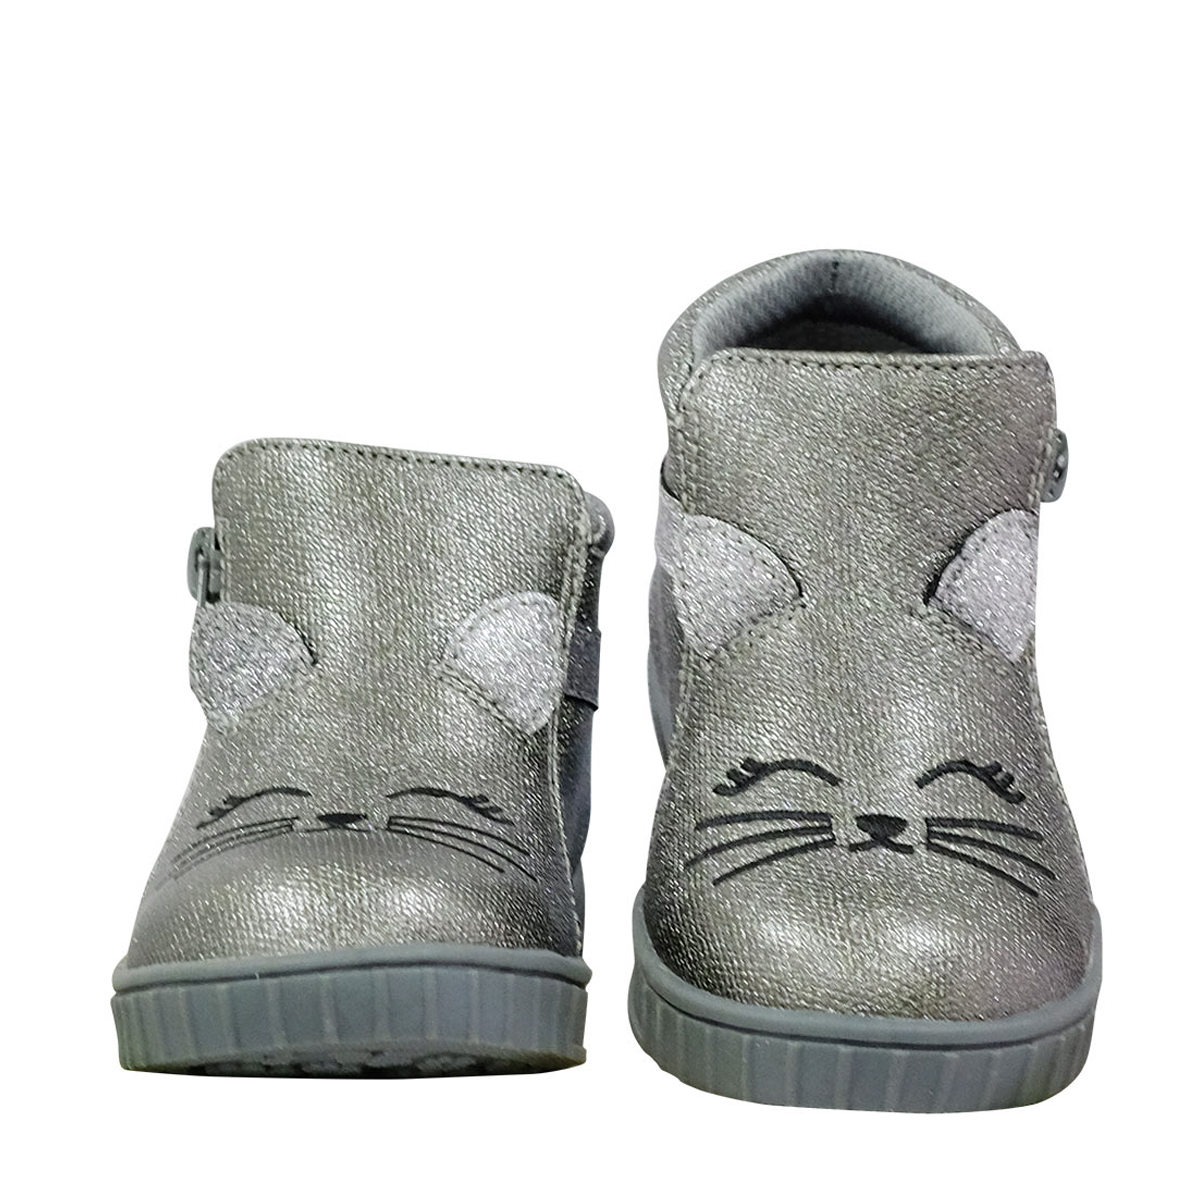 Boot mát xa chân Chicco mèo nhũ bạc